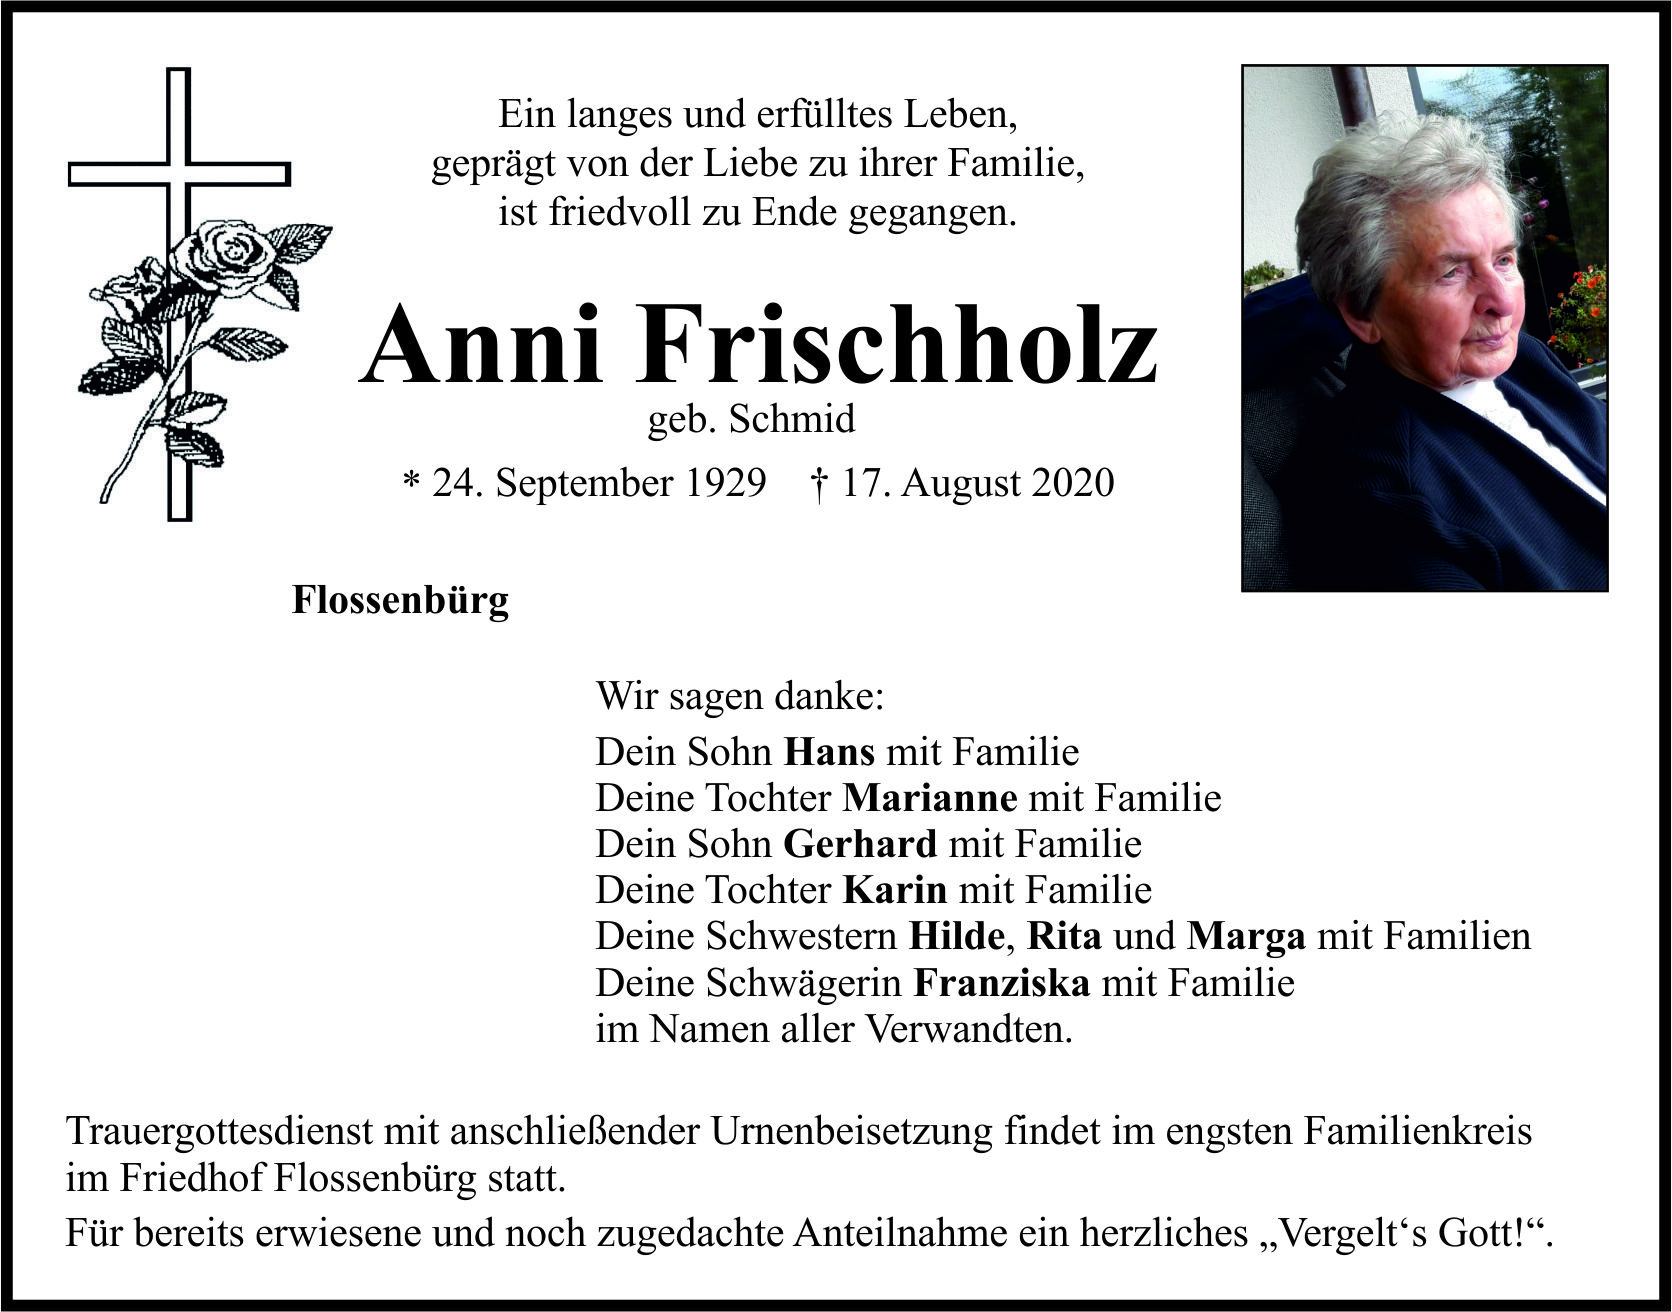 Traueranzeige Anni Frischholz, Flossenbürg